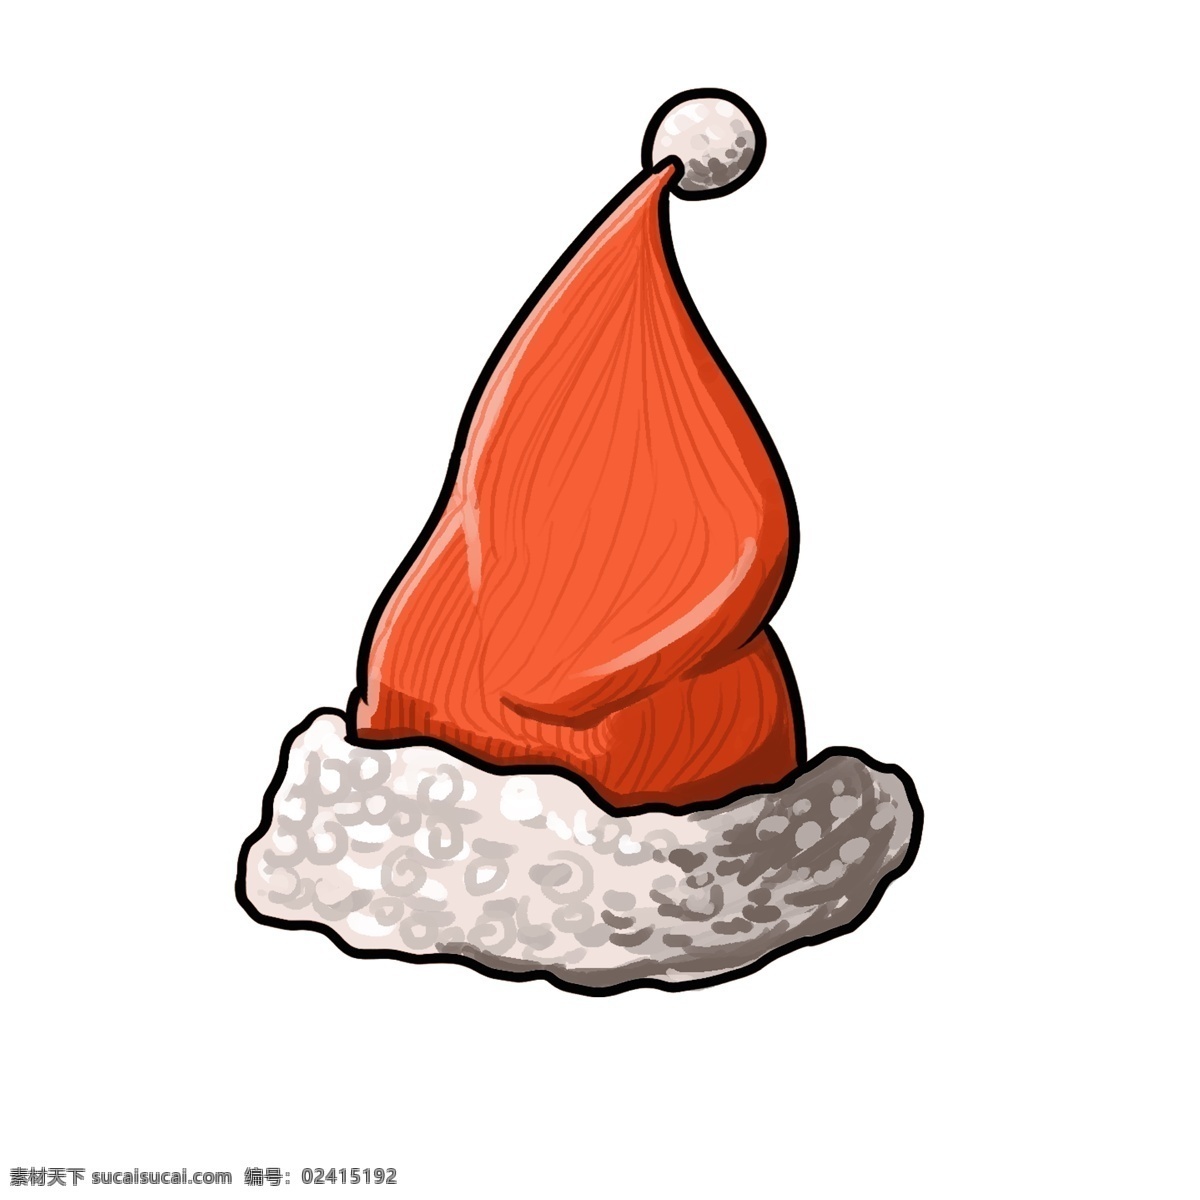 圣诞节 红色 帽子 插画 红色的圣诞帽 手绘圣诞帽 漂亮的圣诞帽 圣诞节圣诞帽 时尚圣诞帽 圣诞帽插画